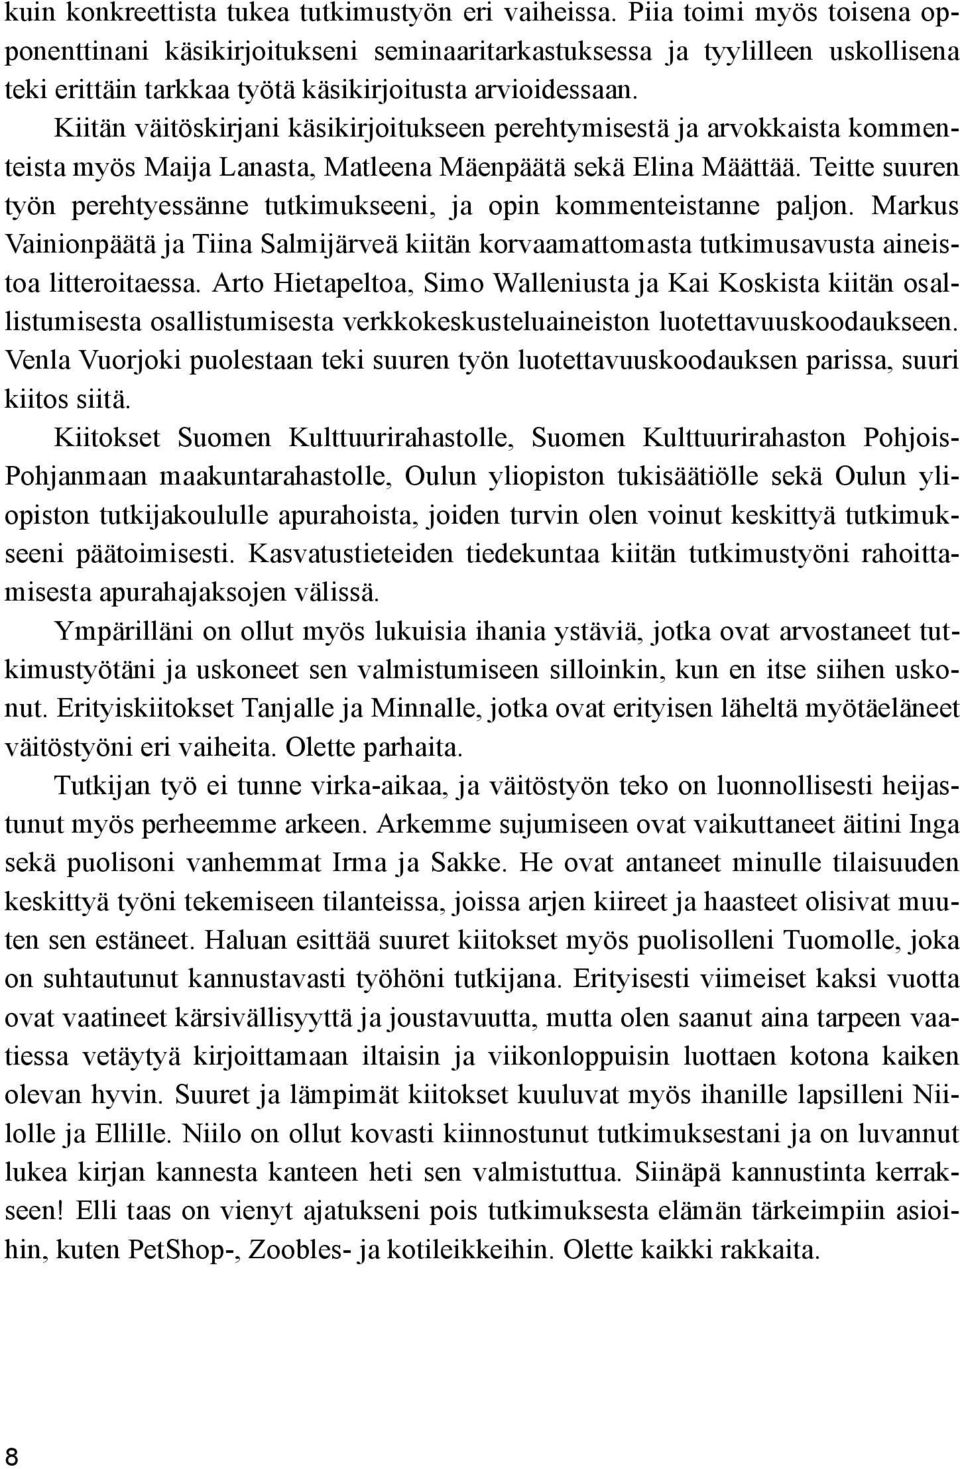 Kiitän väitöskirjani käsikirjoitukseen perehtymisestä ja arvokkaista kommenteista myös Maija Lanasta, Matleena Mäenpäätä sekä Elina Määttää.